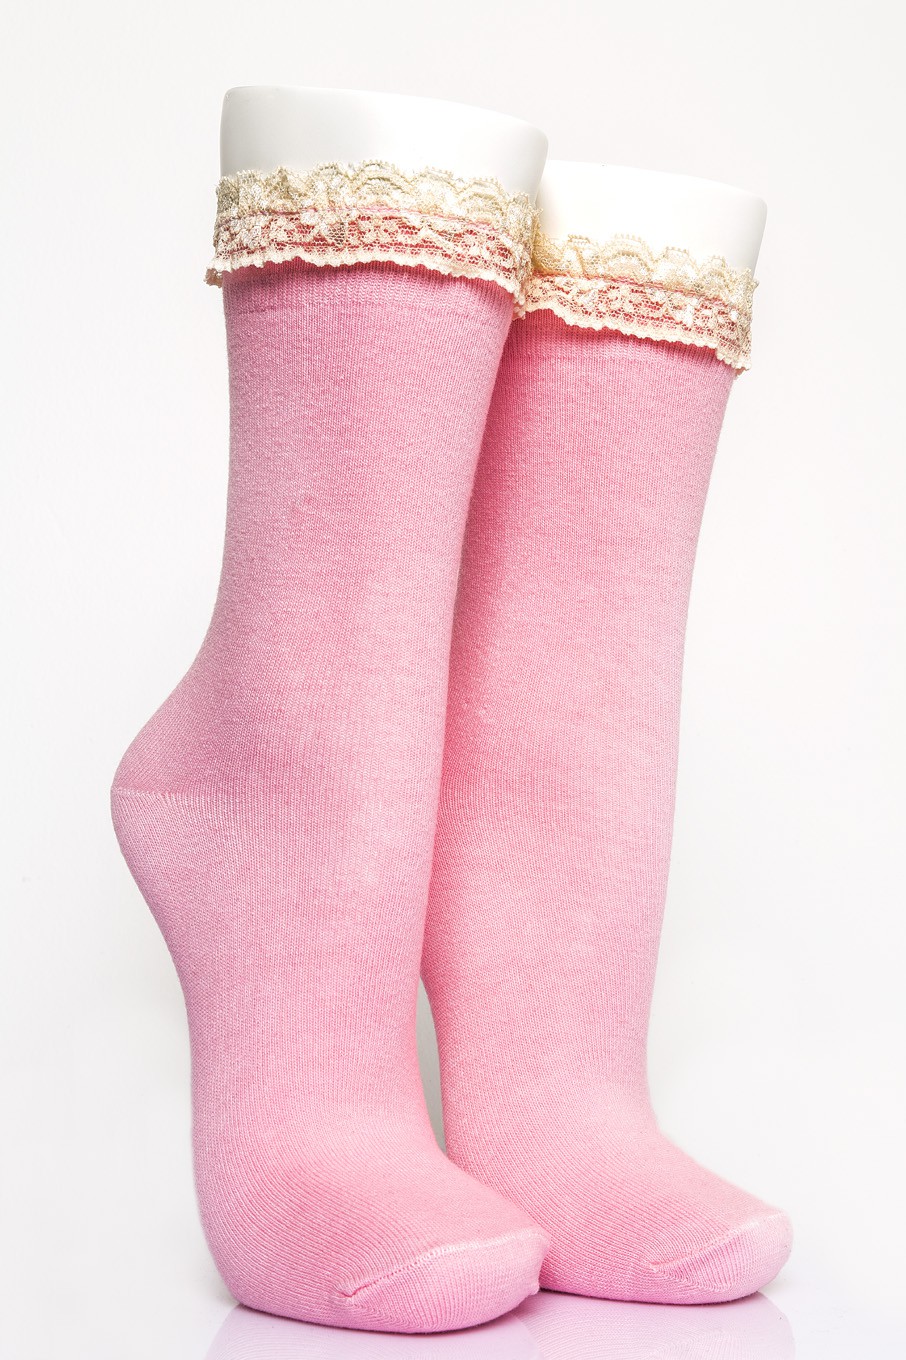 4-Piece Women’s Lace Assortized Socket Socks